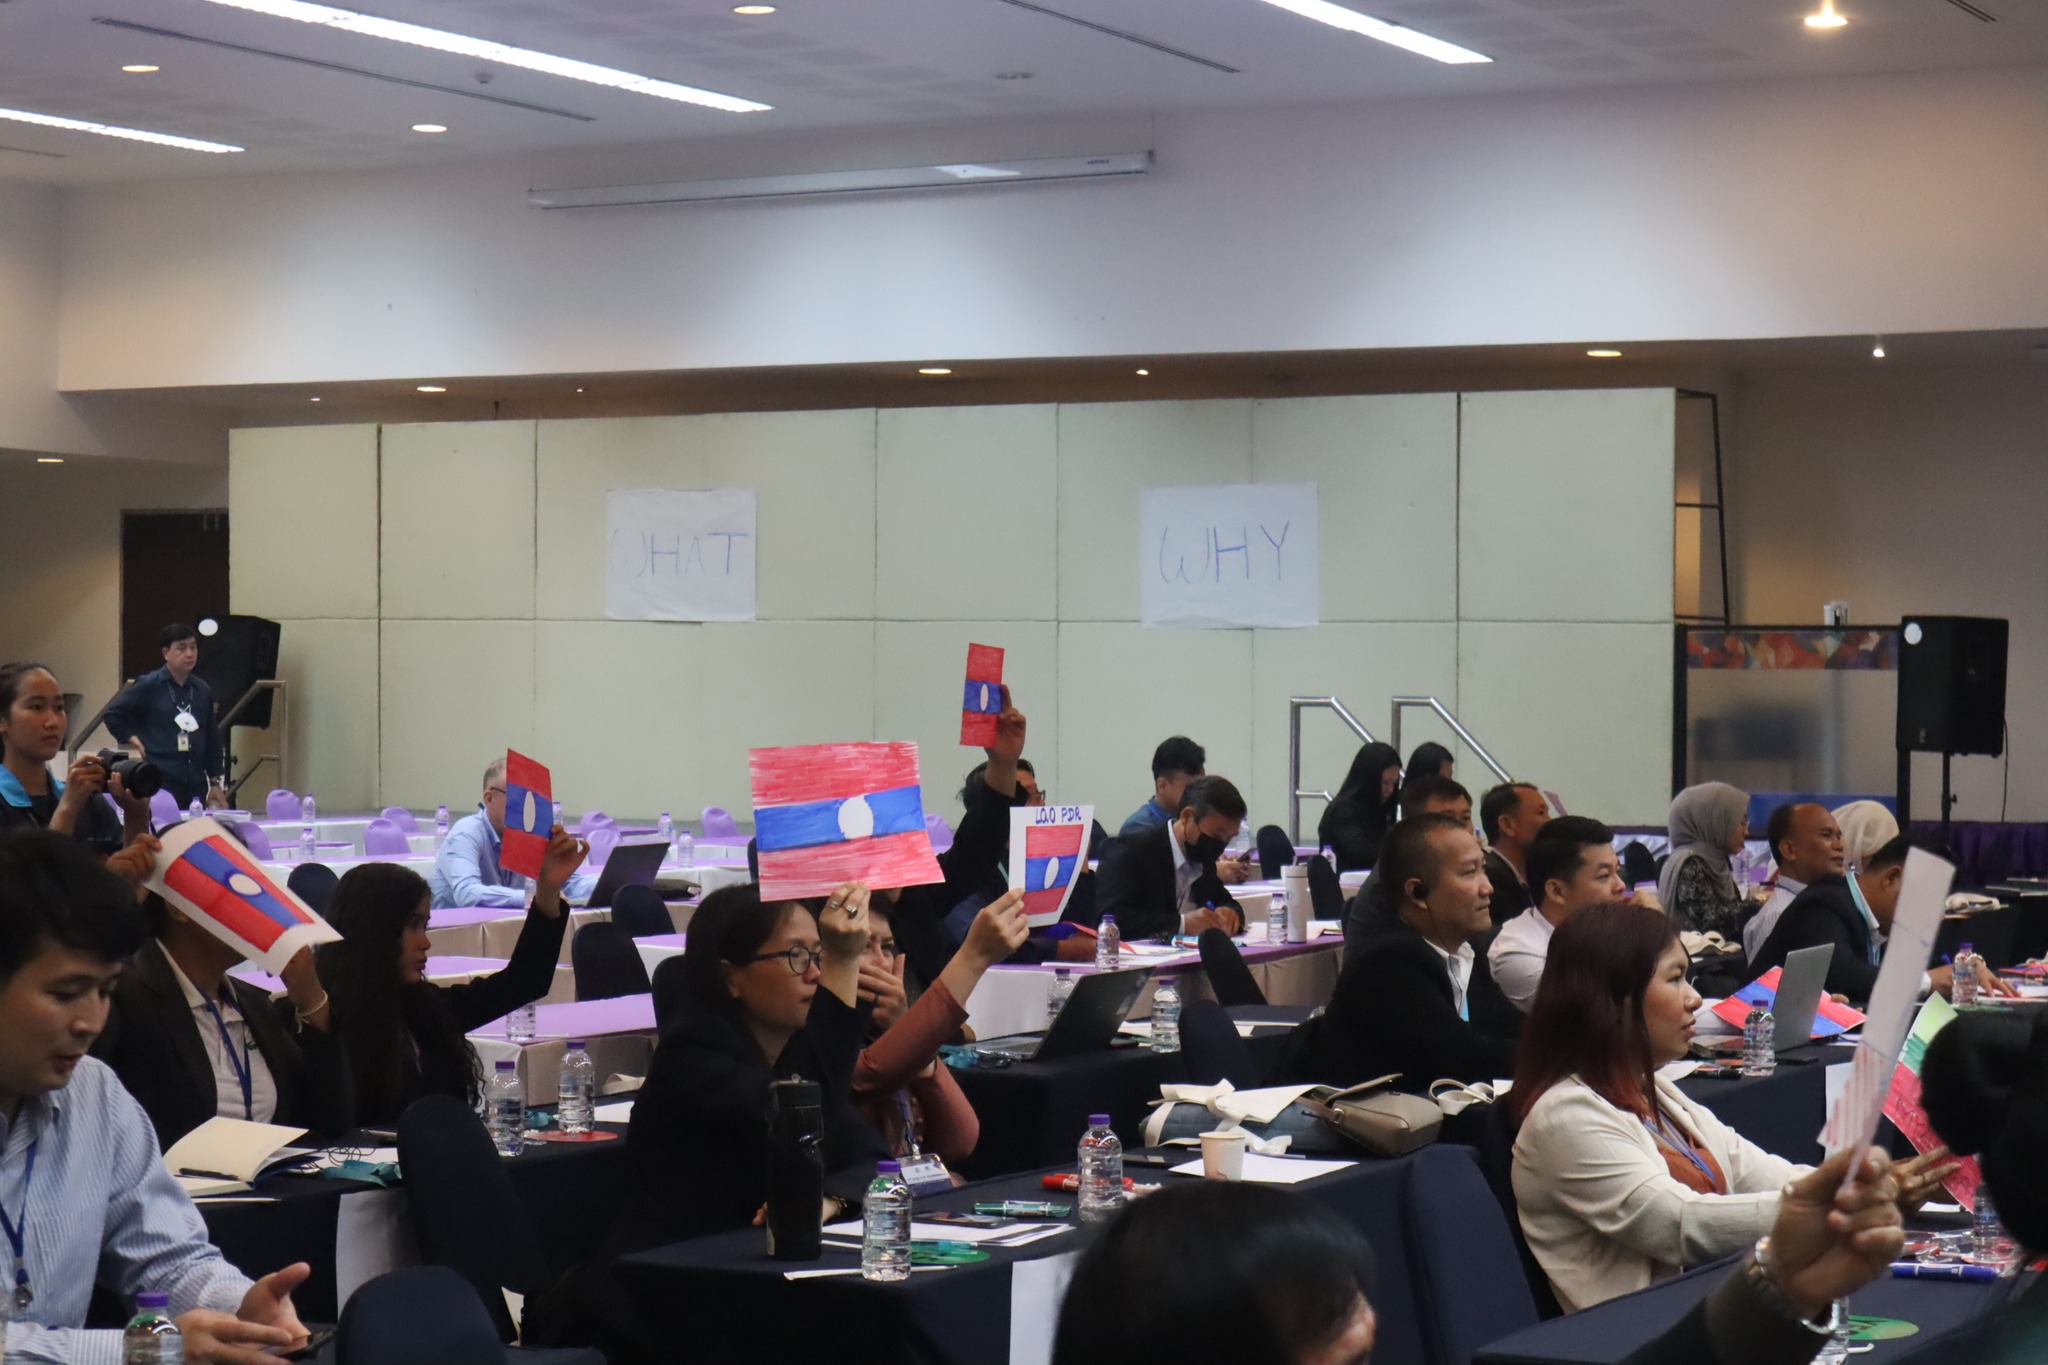 การประชุมวิชาการ The 2nd Asia CLE Conference หัวข้อ “A Generation of Clinical Evolution Achieving Greater Access to Justice”